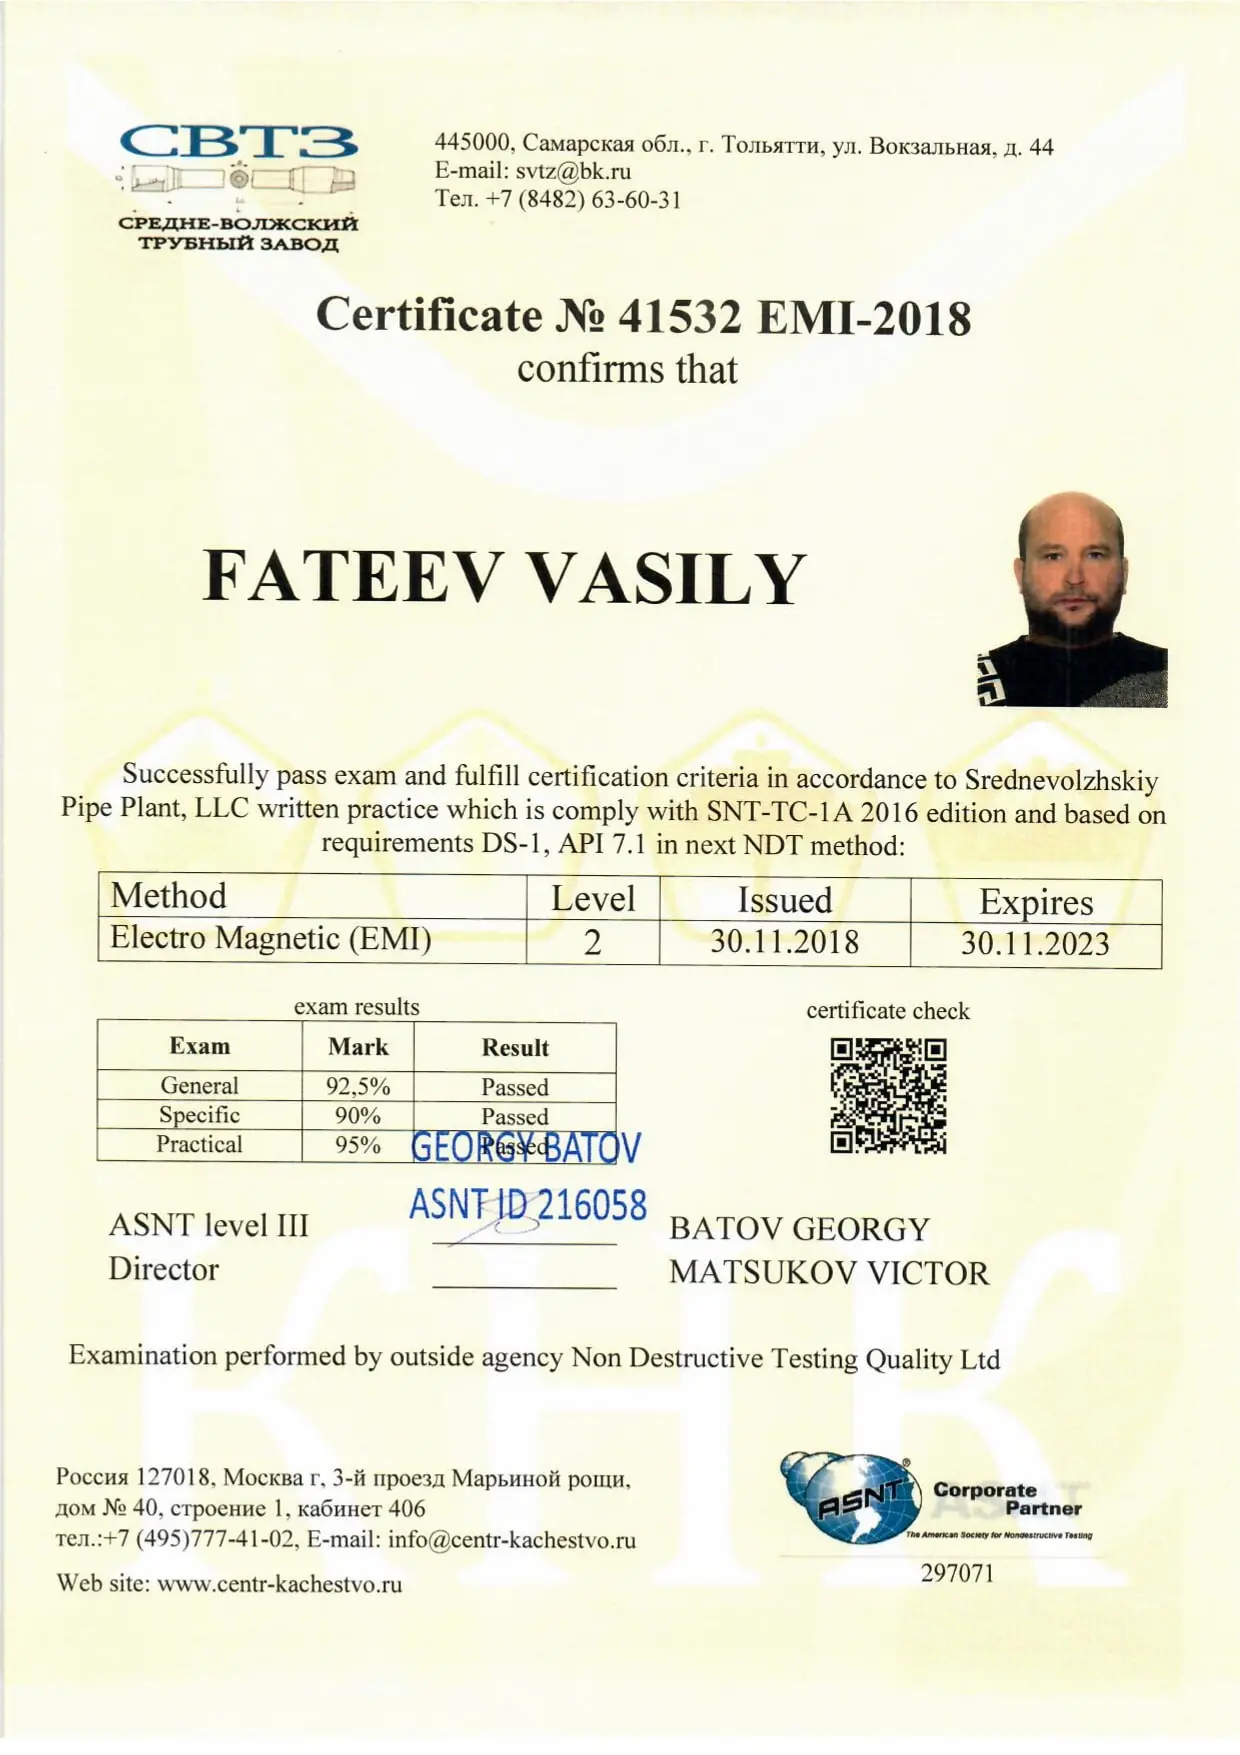 Фатеев сертификат 4